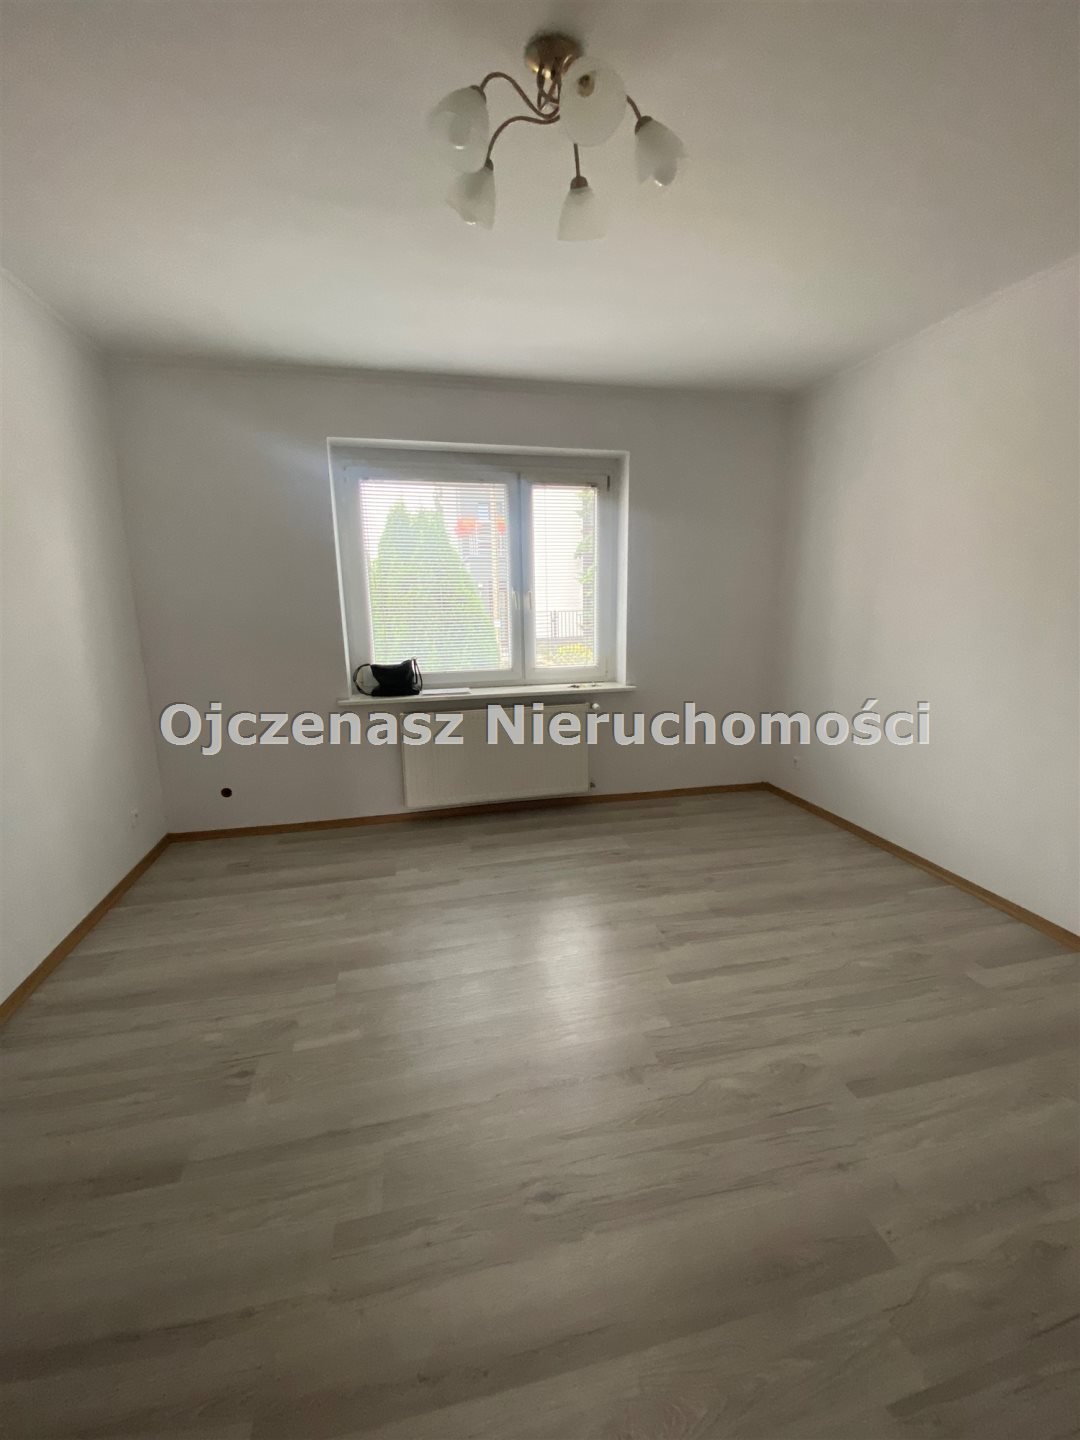 Mieszkanie dwupokojowe na sprzedaż Bydgoszcz, Jary  58m2 Foto 7